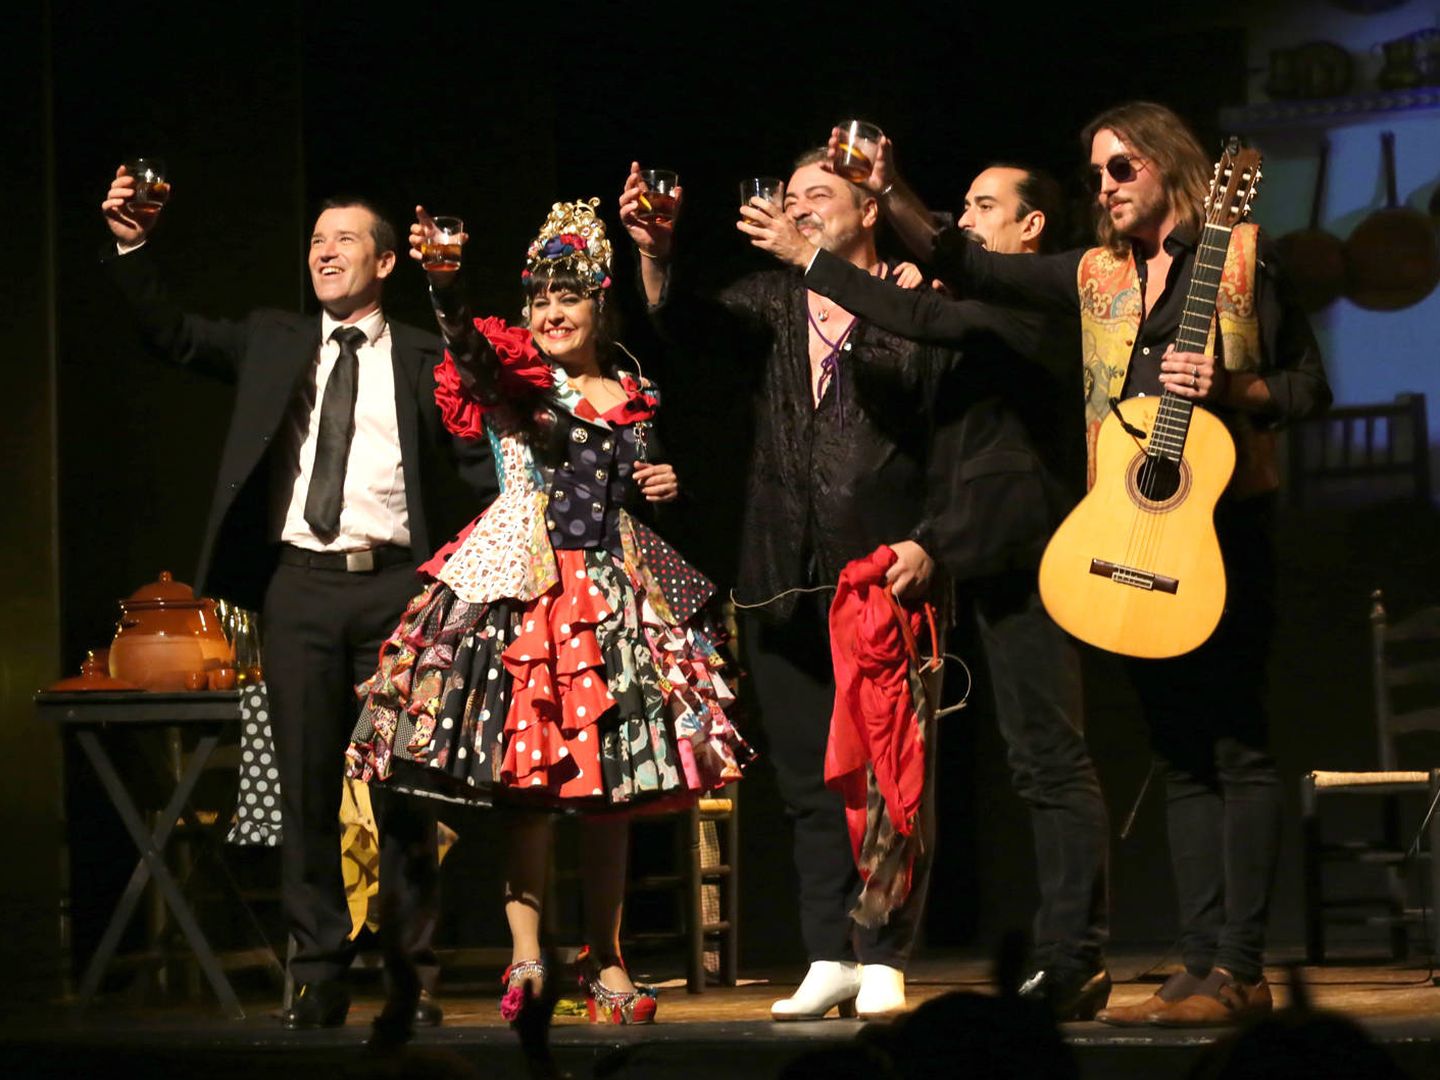 Maui y los suyos en el Teatro Flamenco, entre vermuts y potaje. (Foto: Paco Manzano)